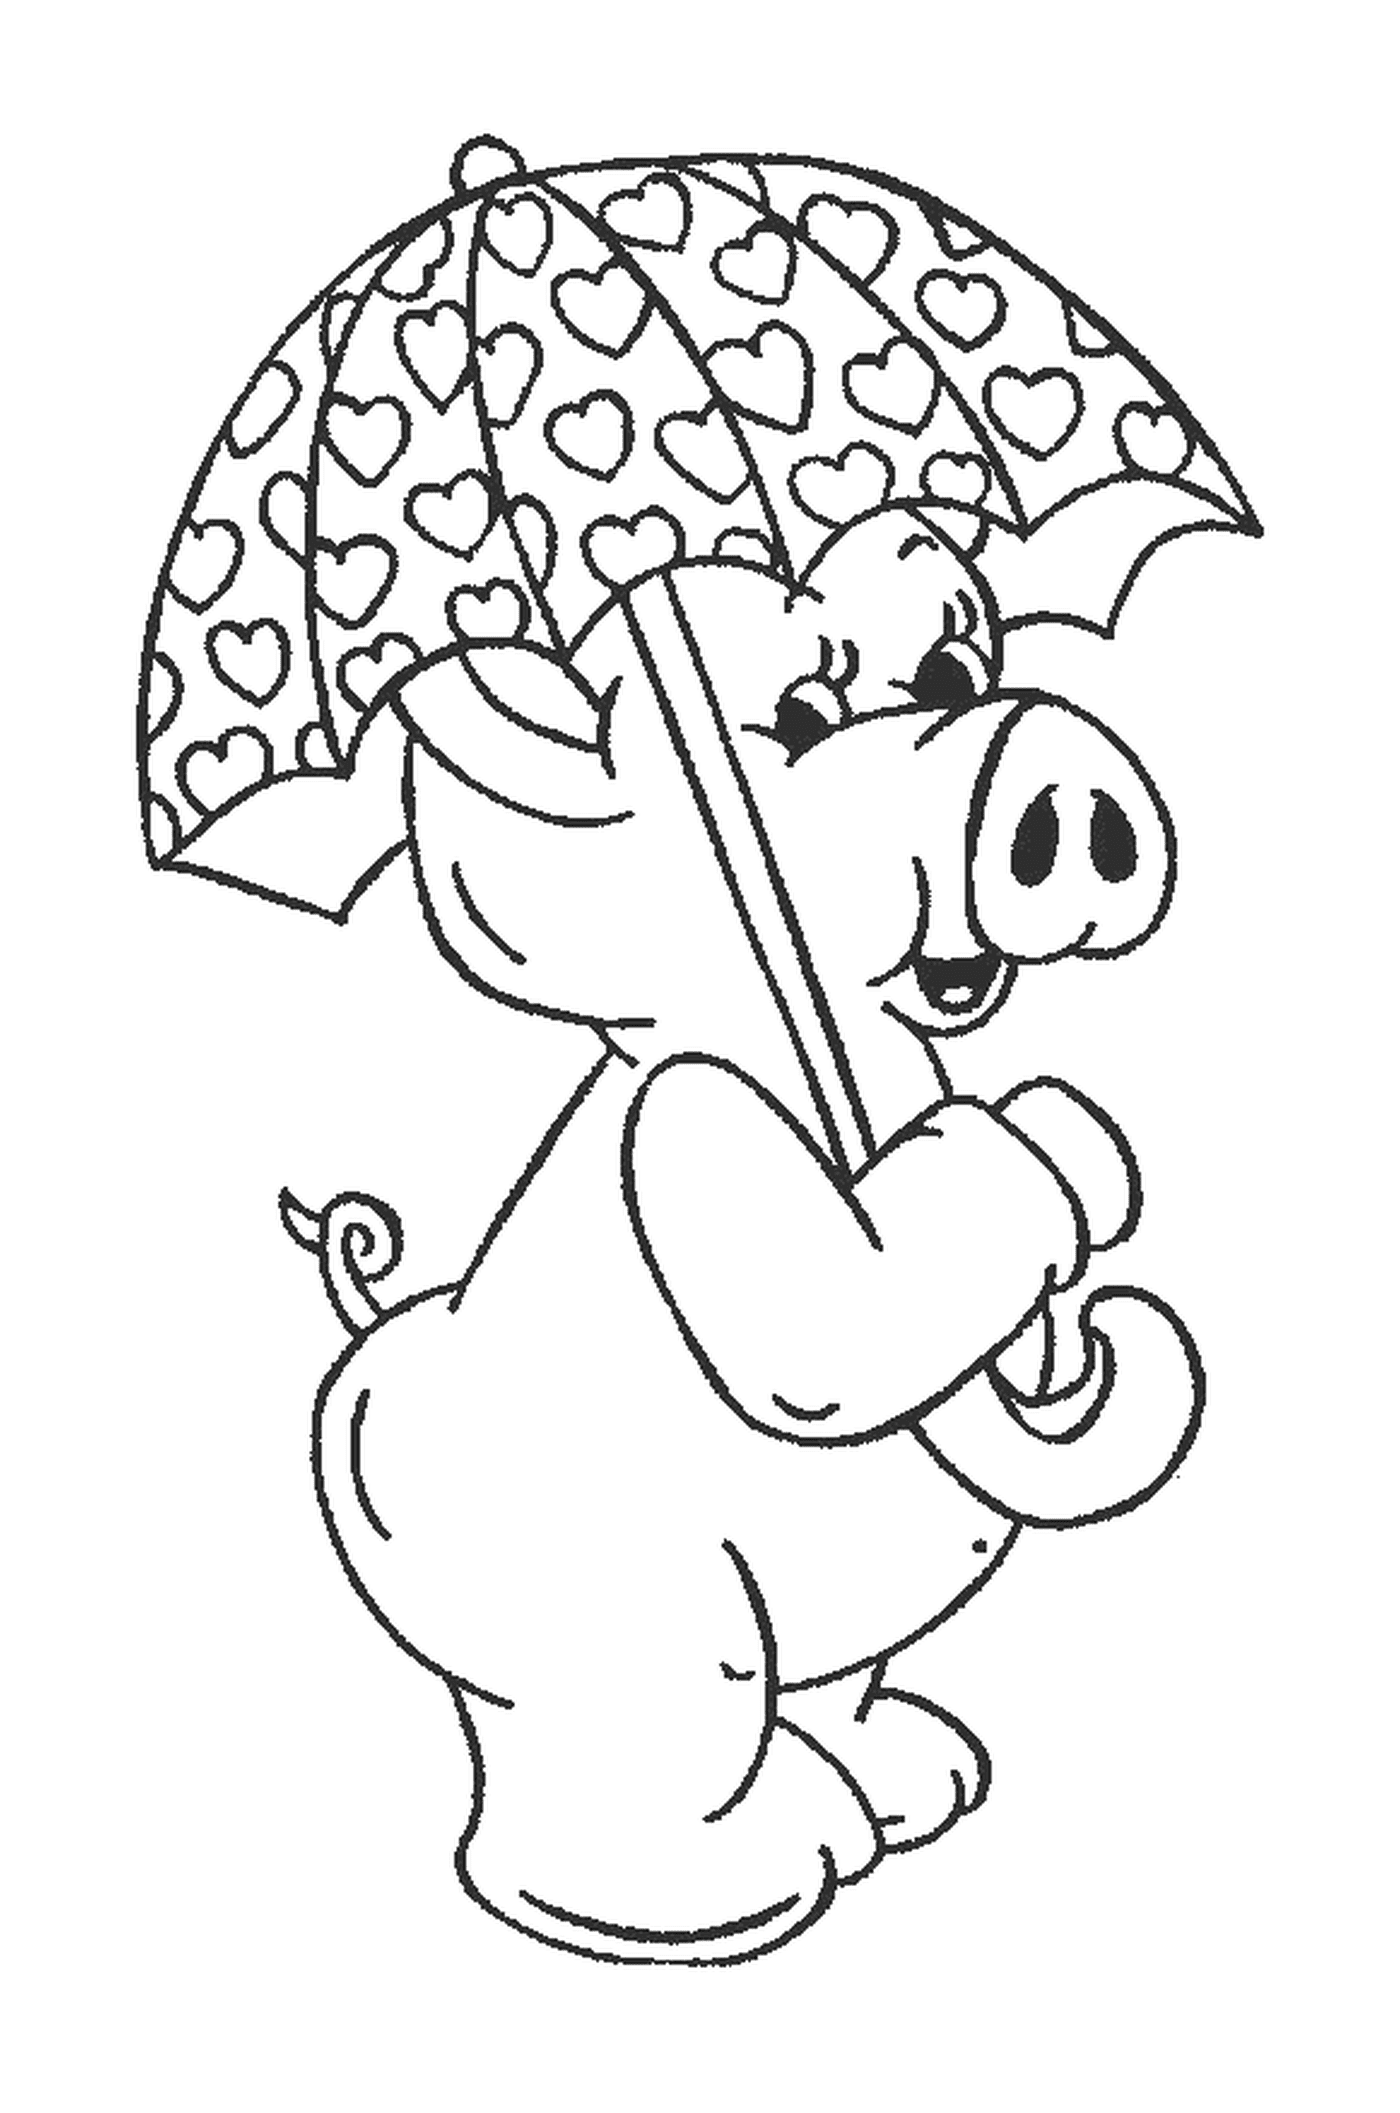  خنزير يحمل مظلة في فمه 